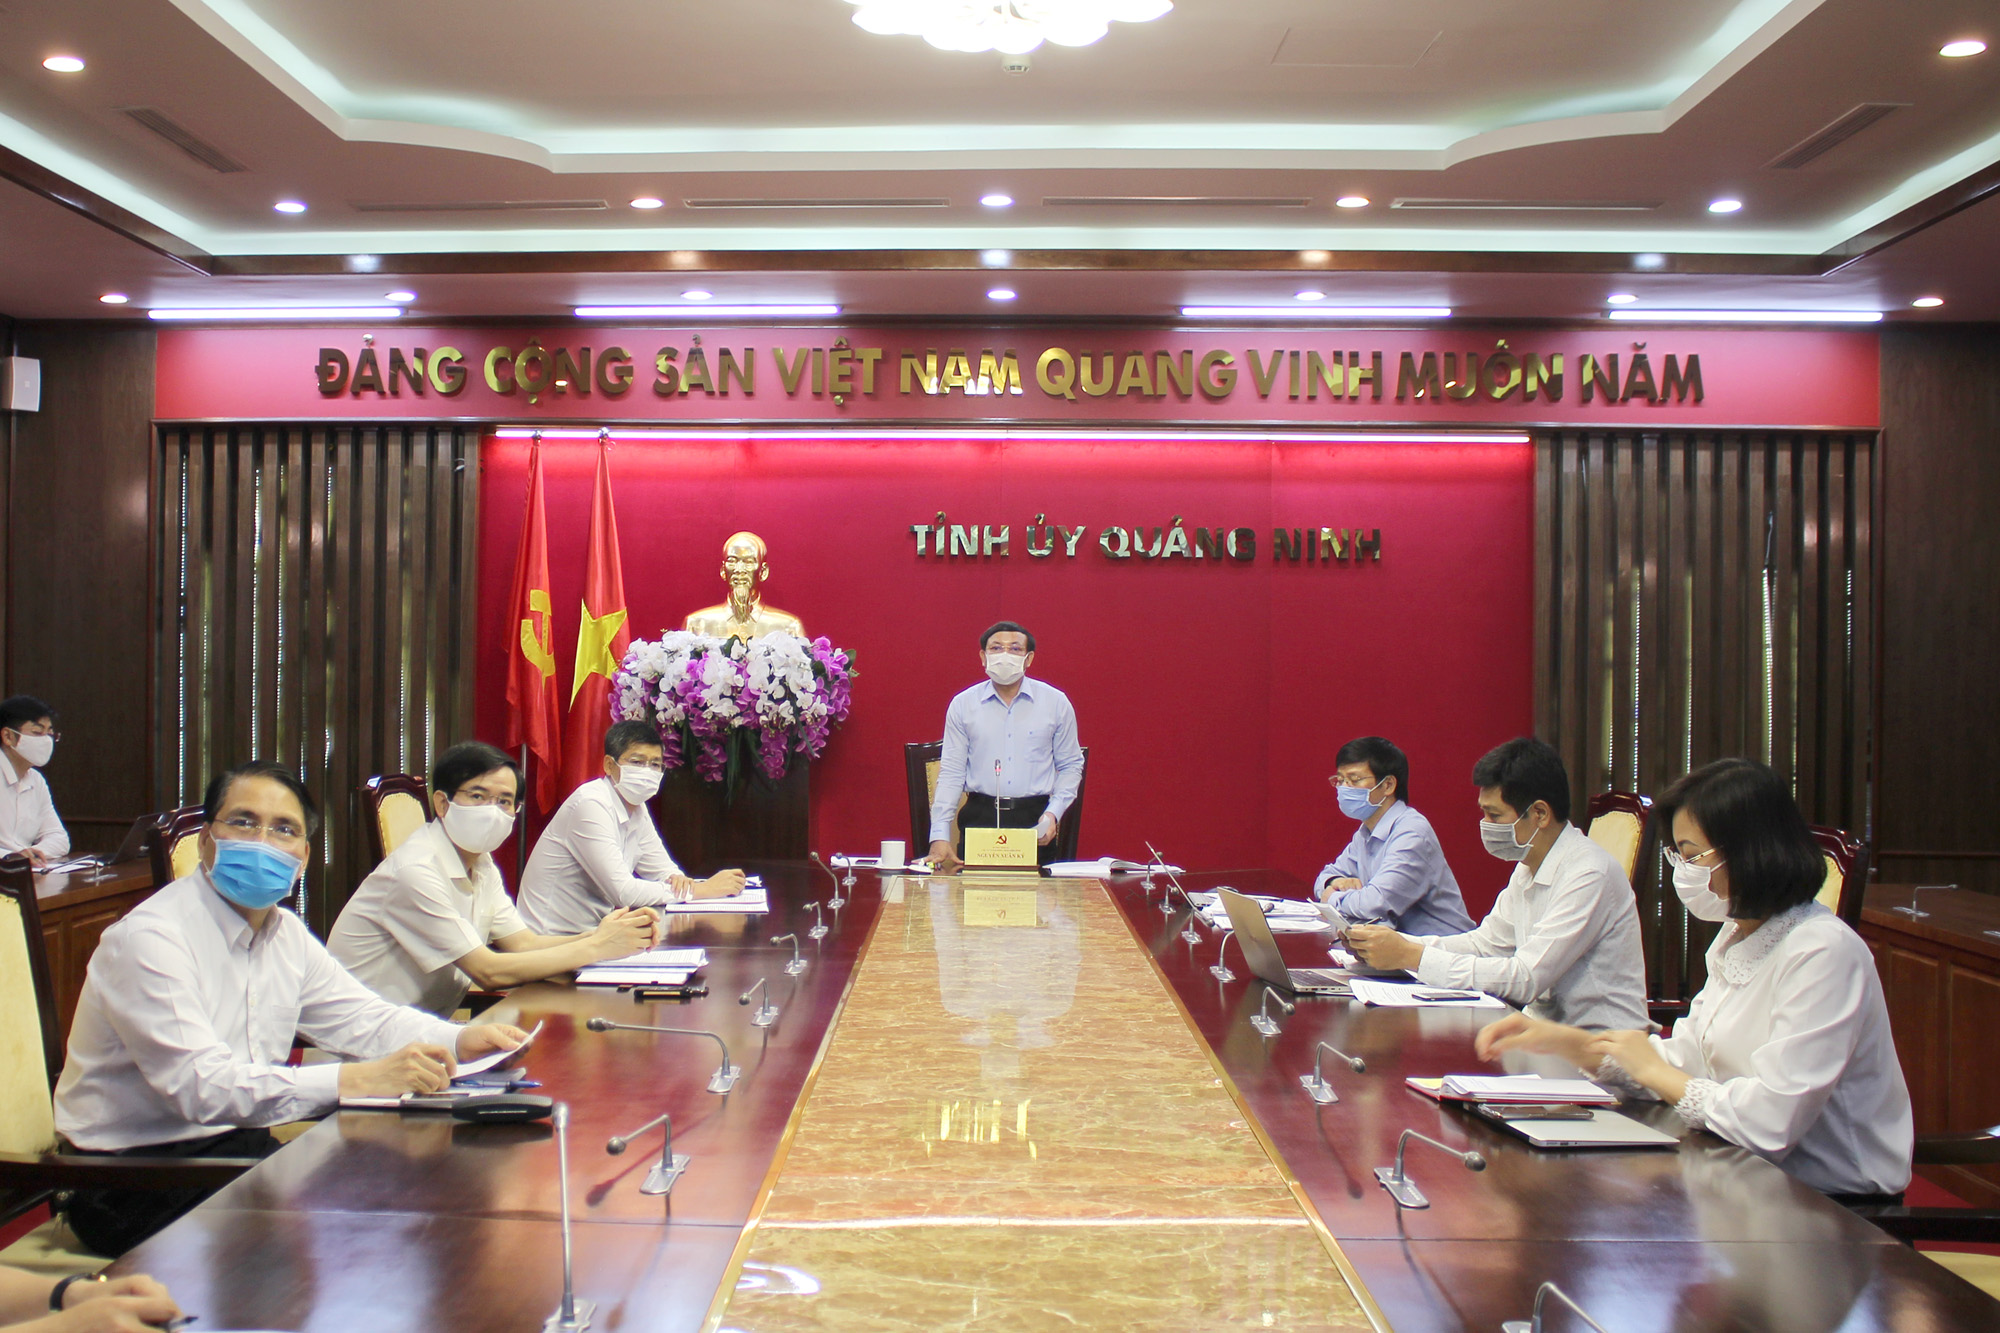 Đồng chí Nguyễn Xuân Ký, Bí thư Tỉnh ủy, Chủ tịch HĐND tỉnh, phát biểu tại cuộc họp.